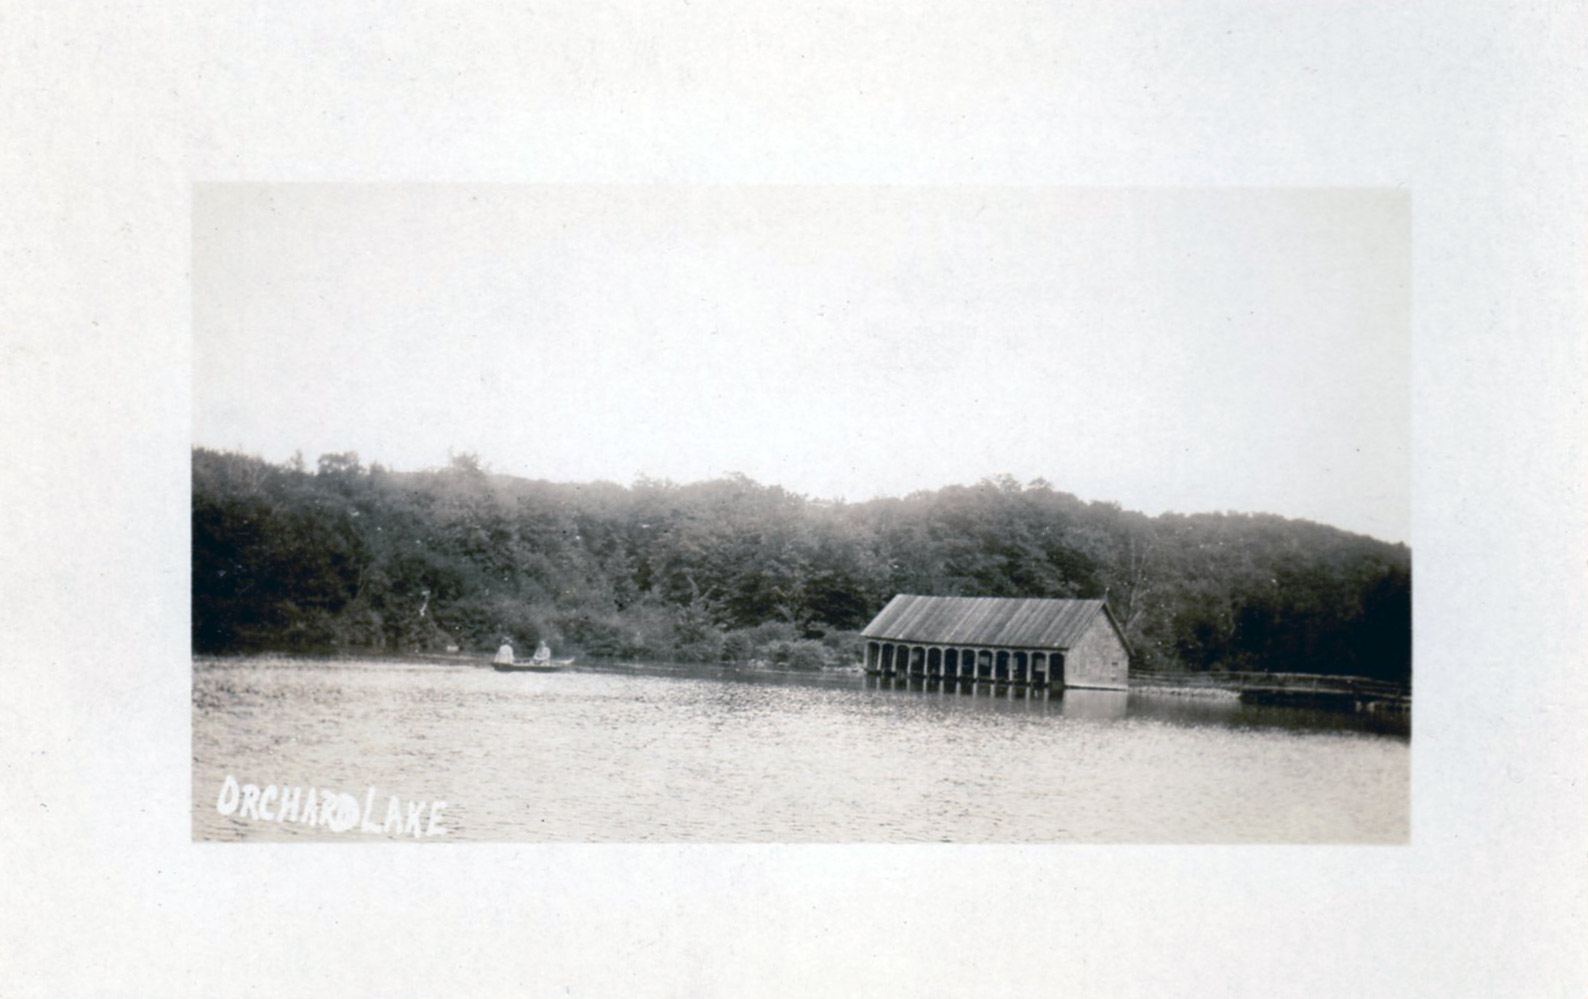 Undated Orchard Lake boathouse postcard